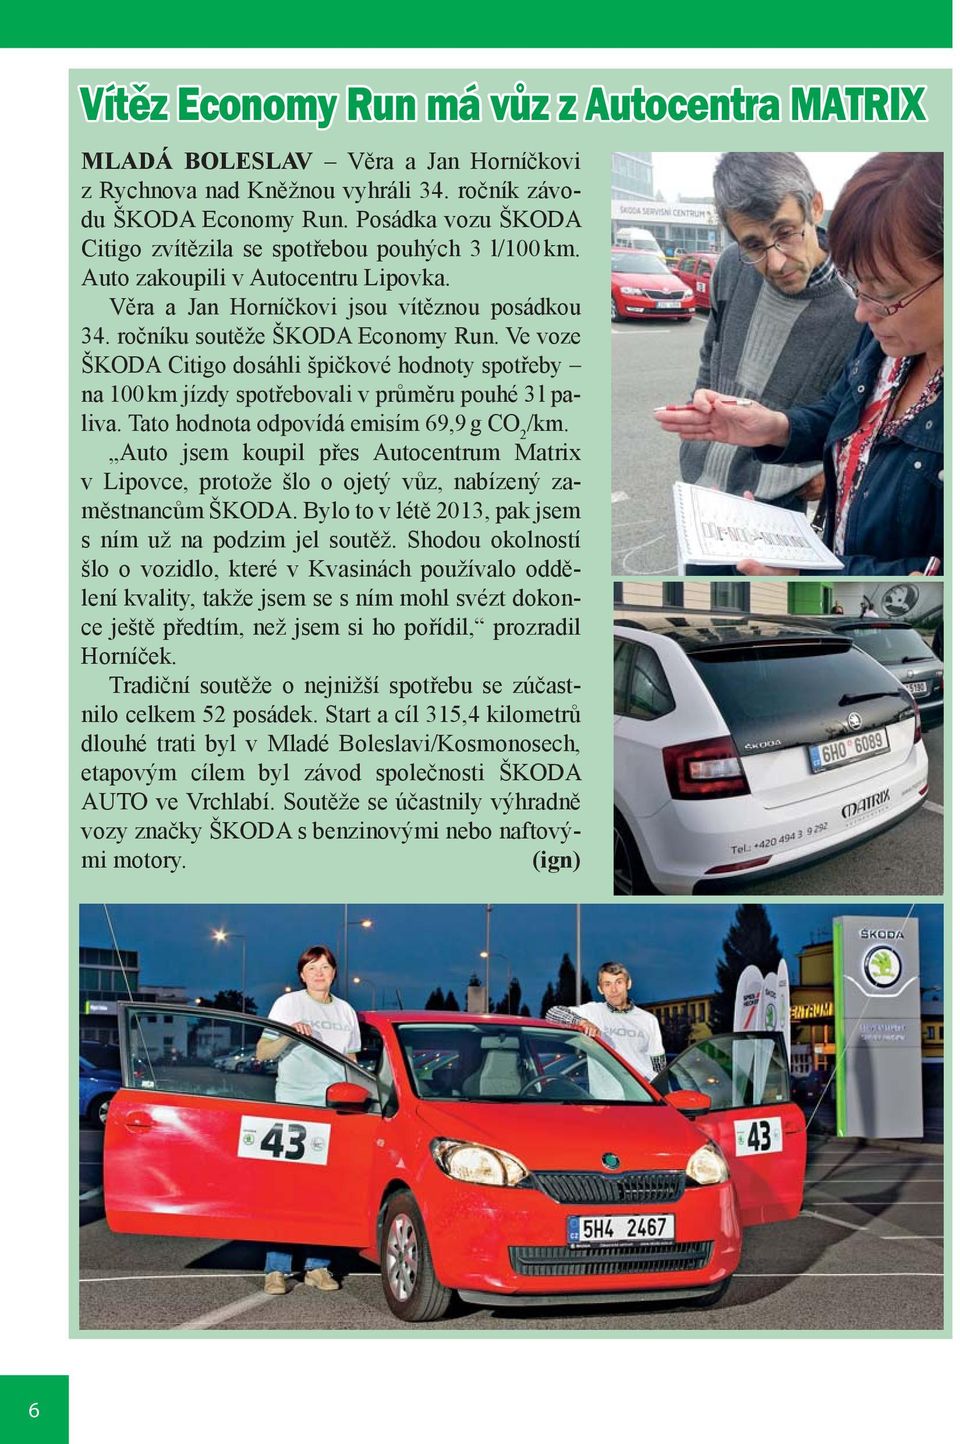 Ve voze ŠKODA Citigo dosáhli špičkové hodnoty spotřeby na 100 km jízdy spotřebovali v průměru pouhé 3 l paliva. Tato hodnota odpovídá emisím 69,9 g CO 2 /km.